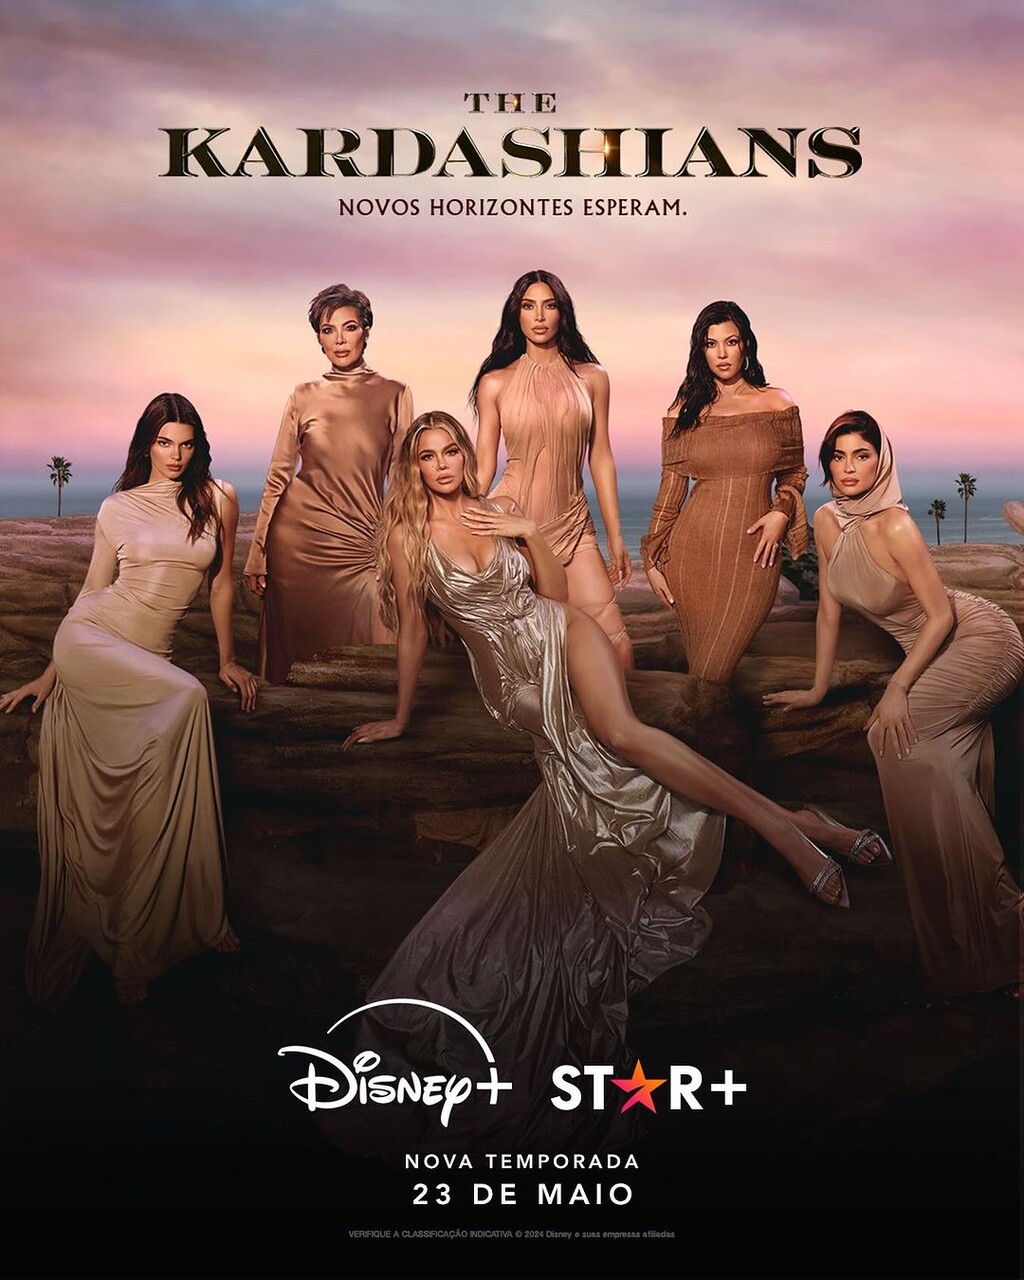 Disney+ e Star+ Apresentam o Trailer e Pôster da Quinta Temporada de The Kardashians que Estreia em 23 de Maio